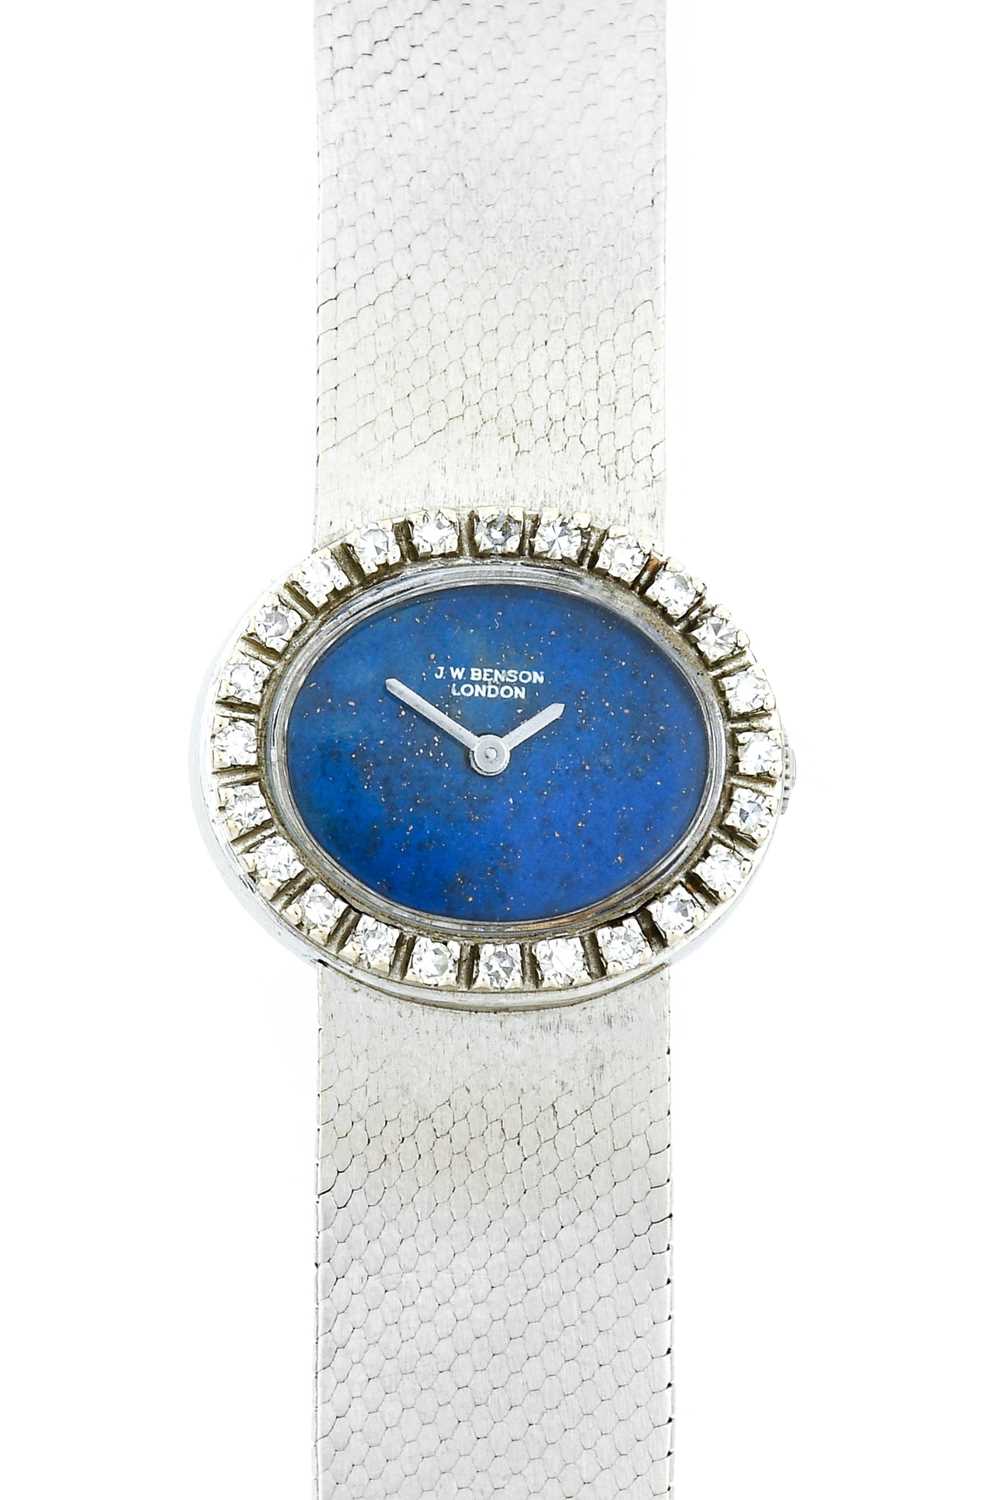 Benson: A Lady's 14 Carat White Gold Diamond Set Wristwatch, retailed by J.W.Benson, 1973, manual